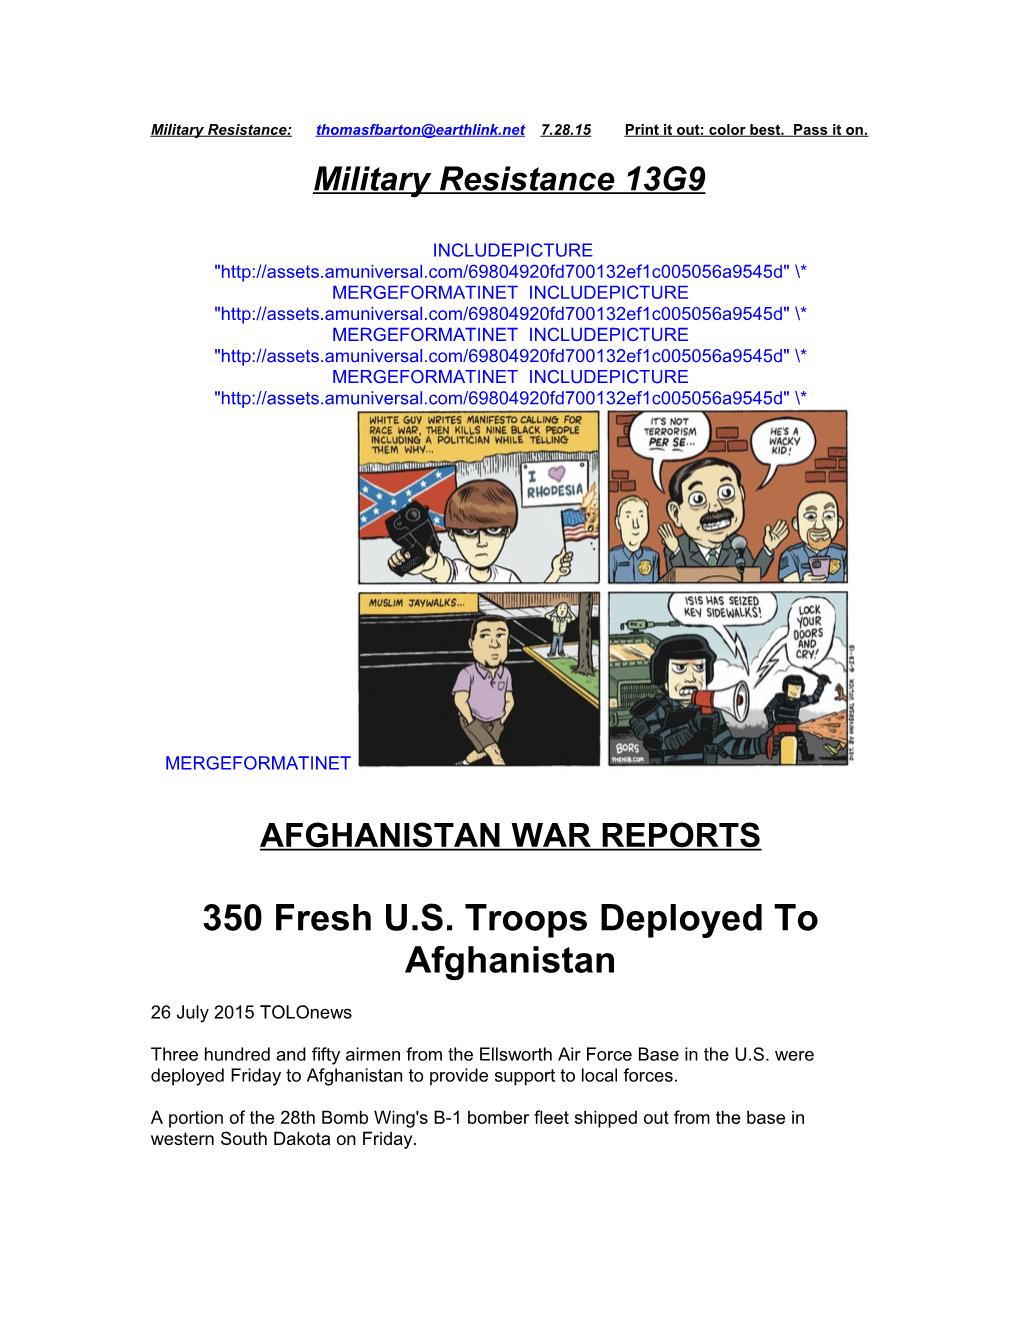 350 Fresh U.S. Troops Deployed to Afghanistan